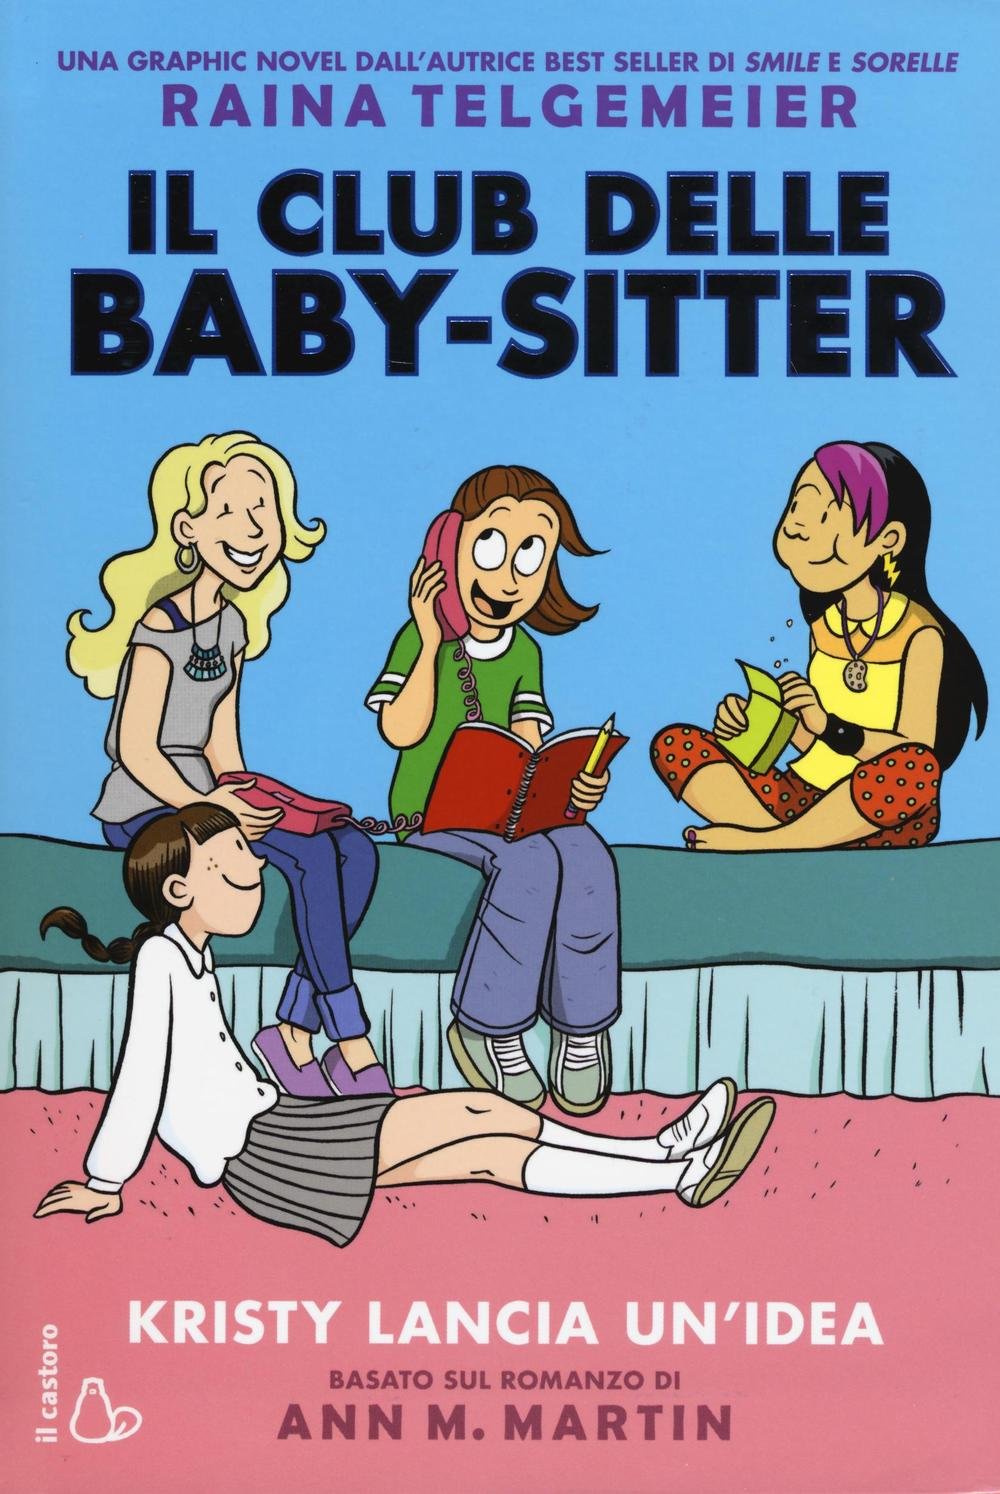 Il Club delle Baby-sitter (1) - Kristy lancia un’idea